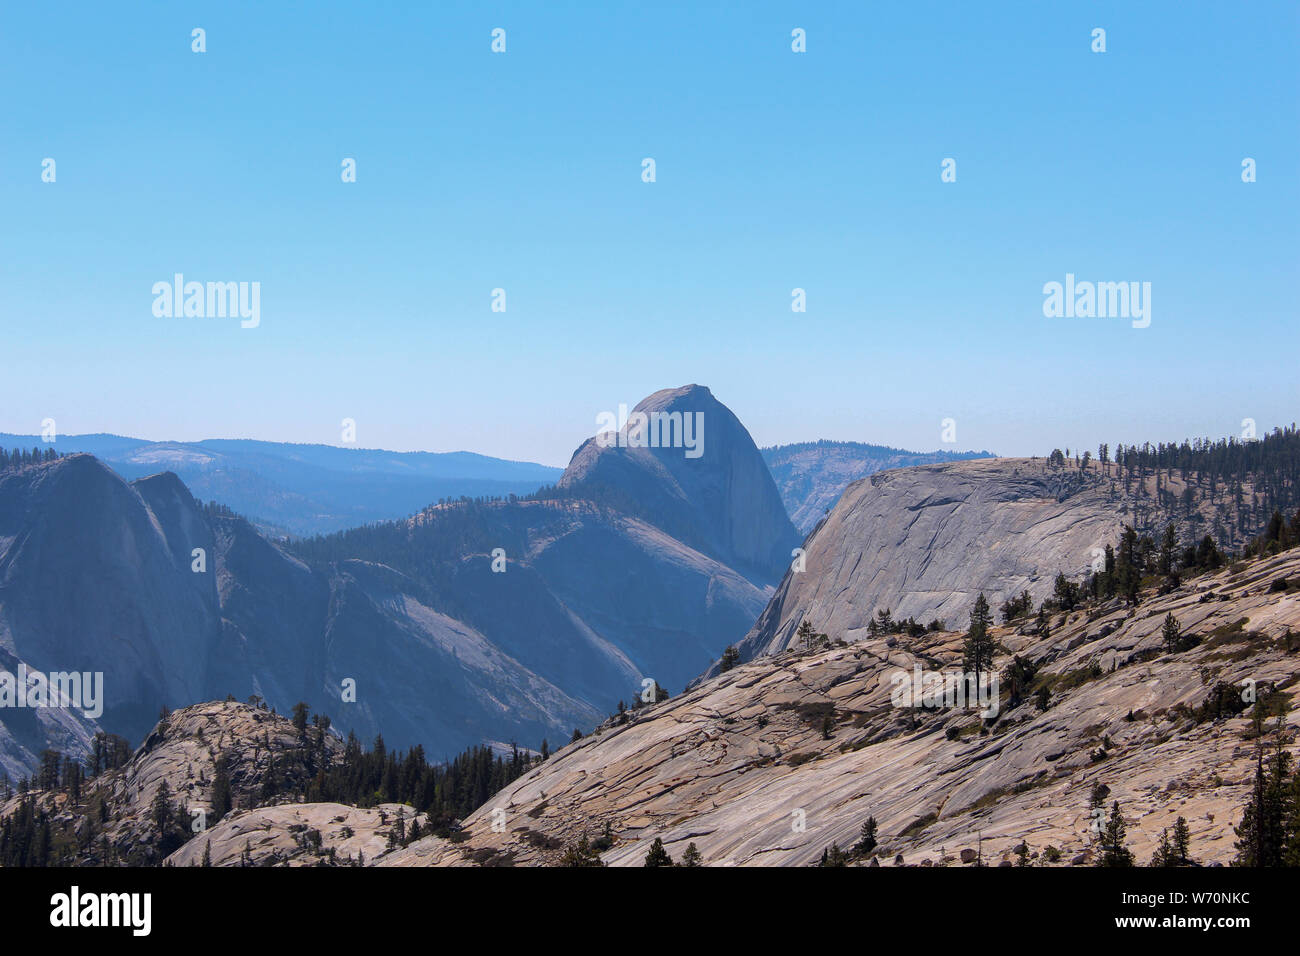 Olmsted punto lungo la Tioga Road, del Parco Nazionale Yosemite, offre una vista in Tenaya Canyon, particolarmente Half Dome e Tenaya Lake. Foto Stock